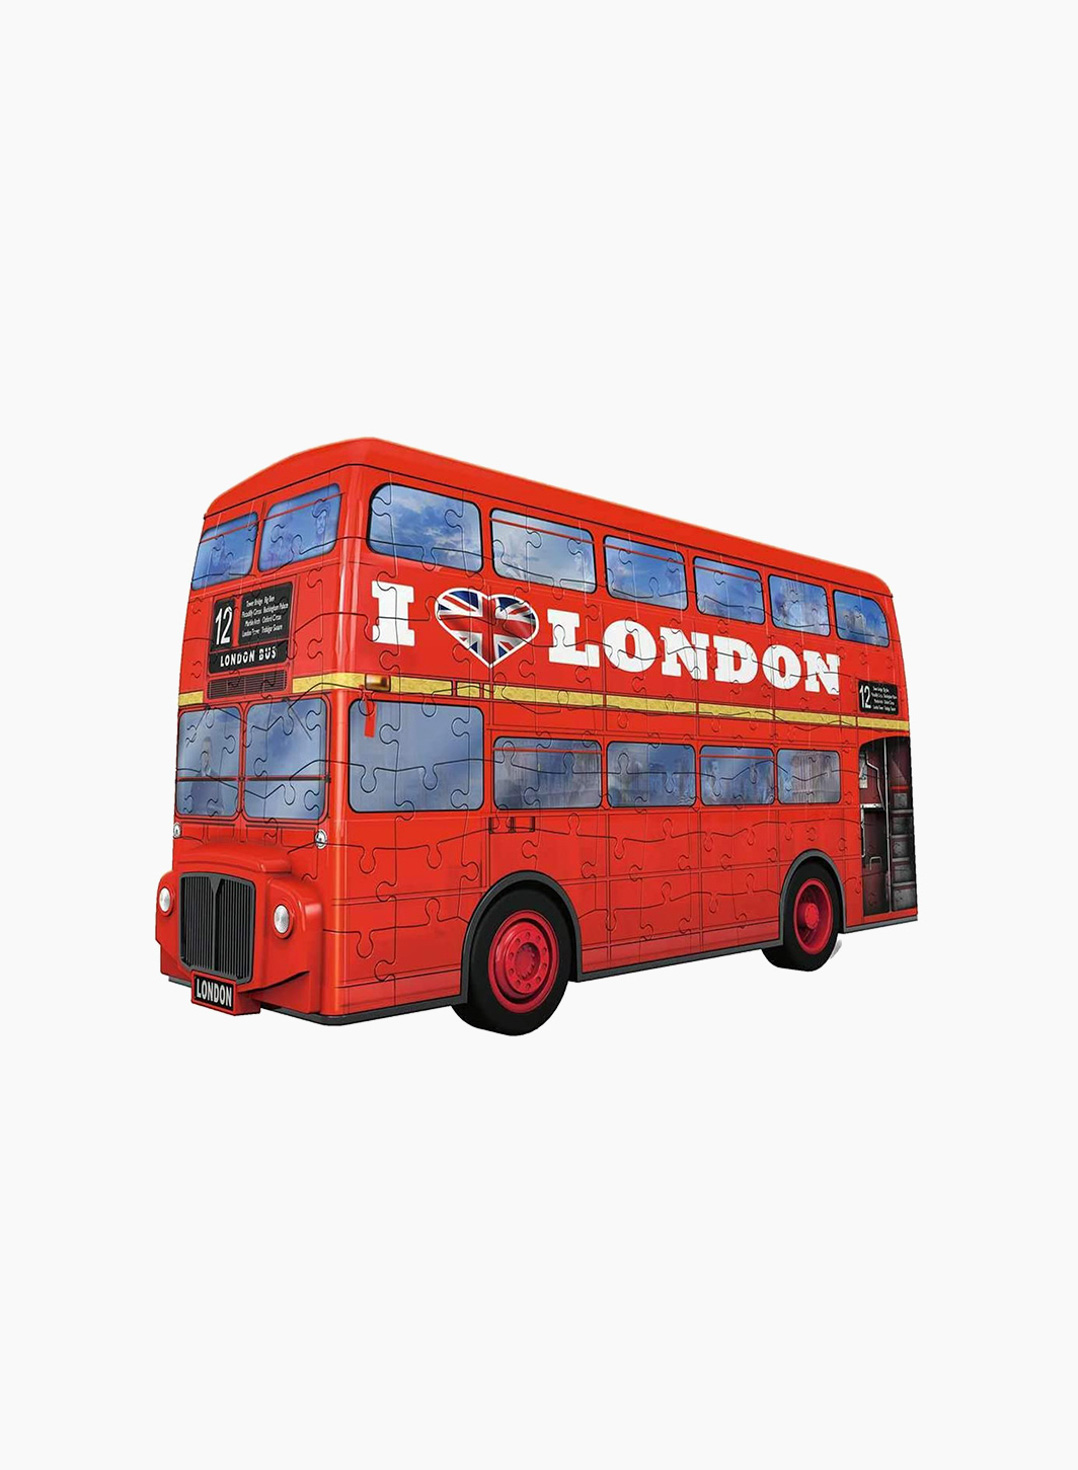 Ravensburger 3D Puzzle London Bus 216p